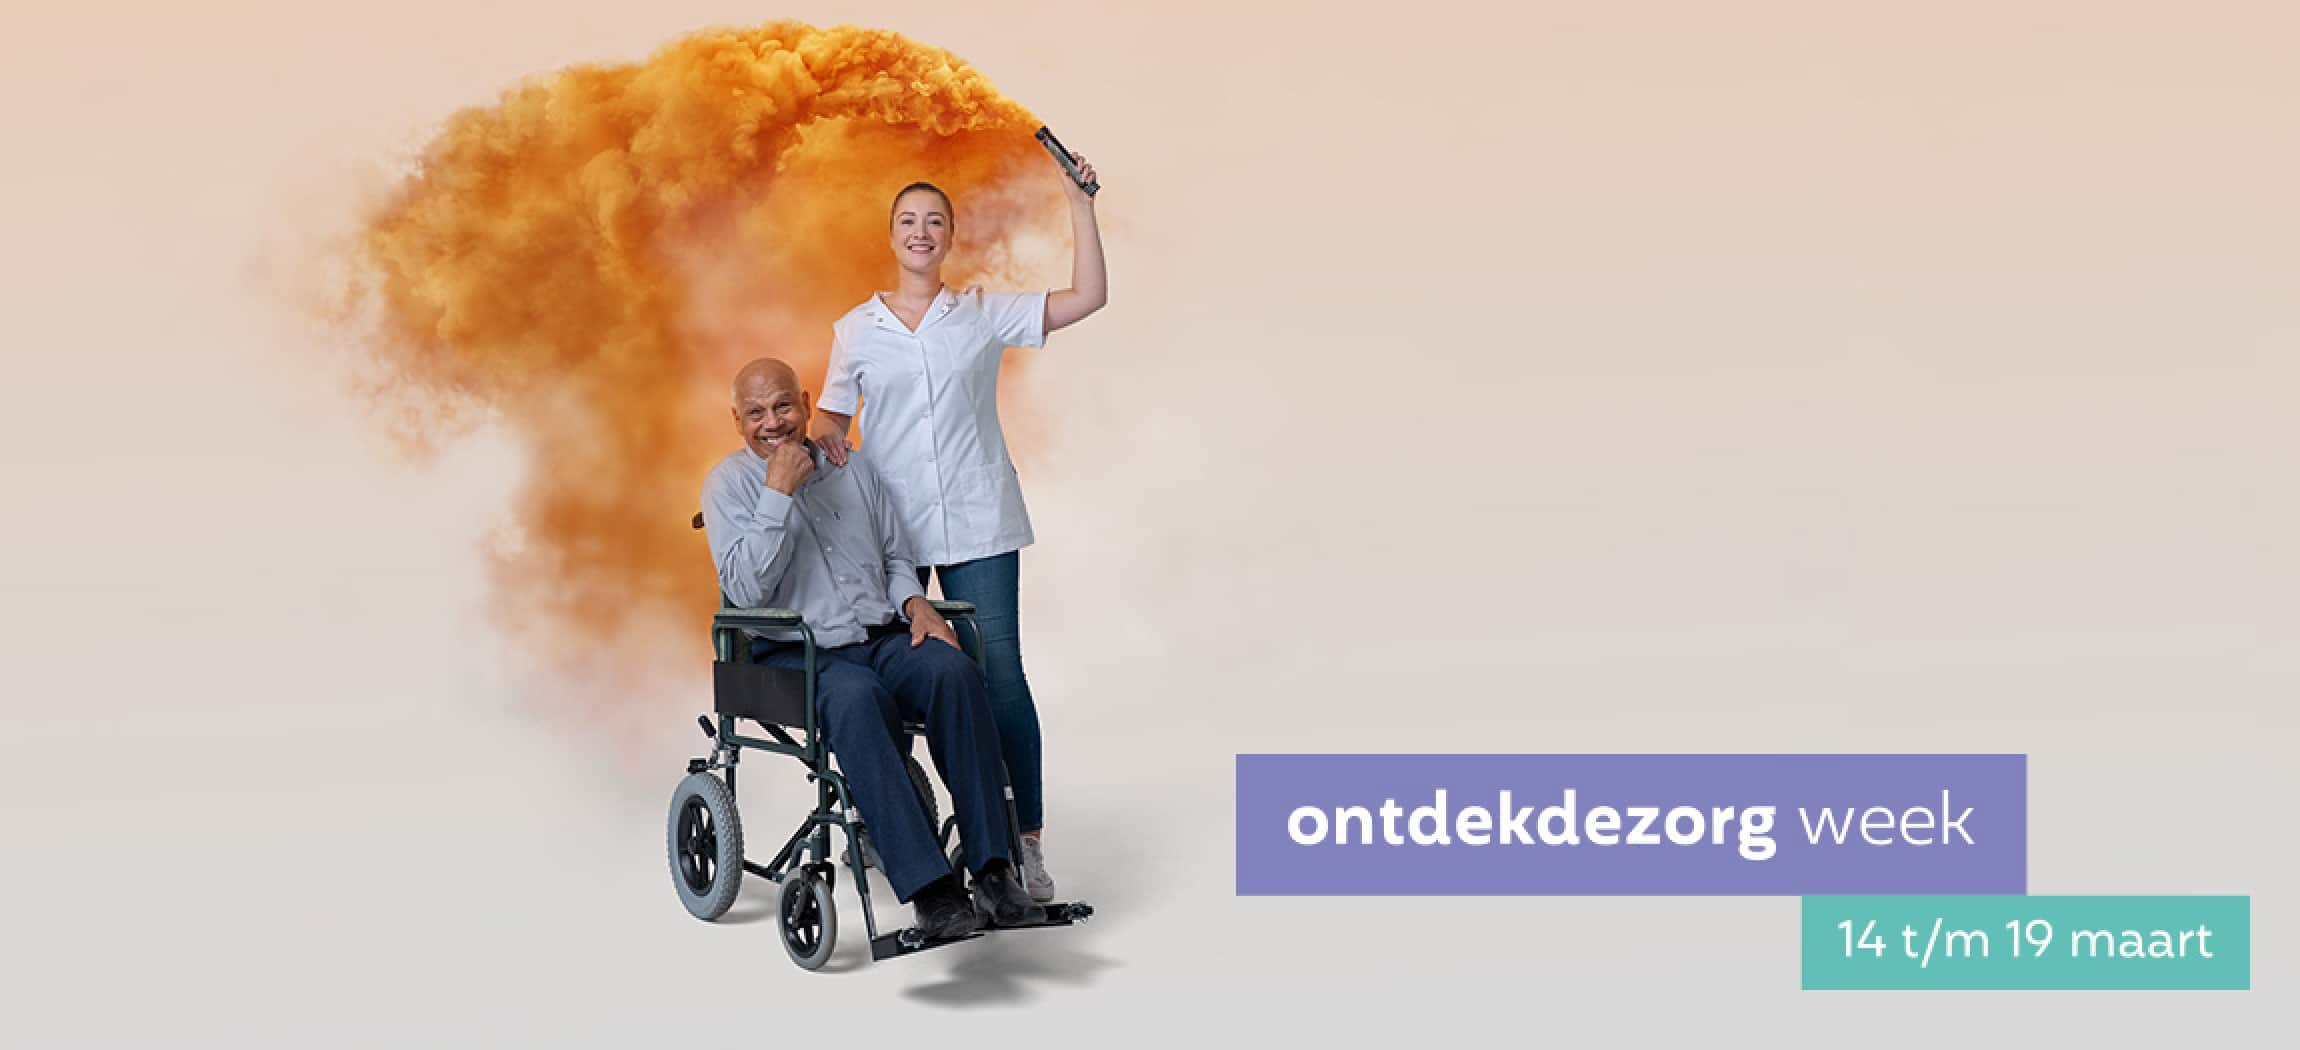 Afbeelding van Amstelring inspireert tijdens de ontdekdezorg week